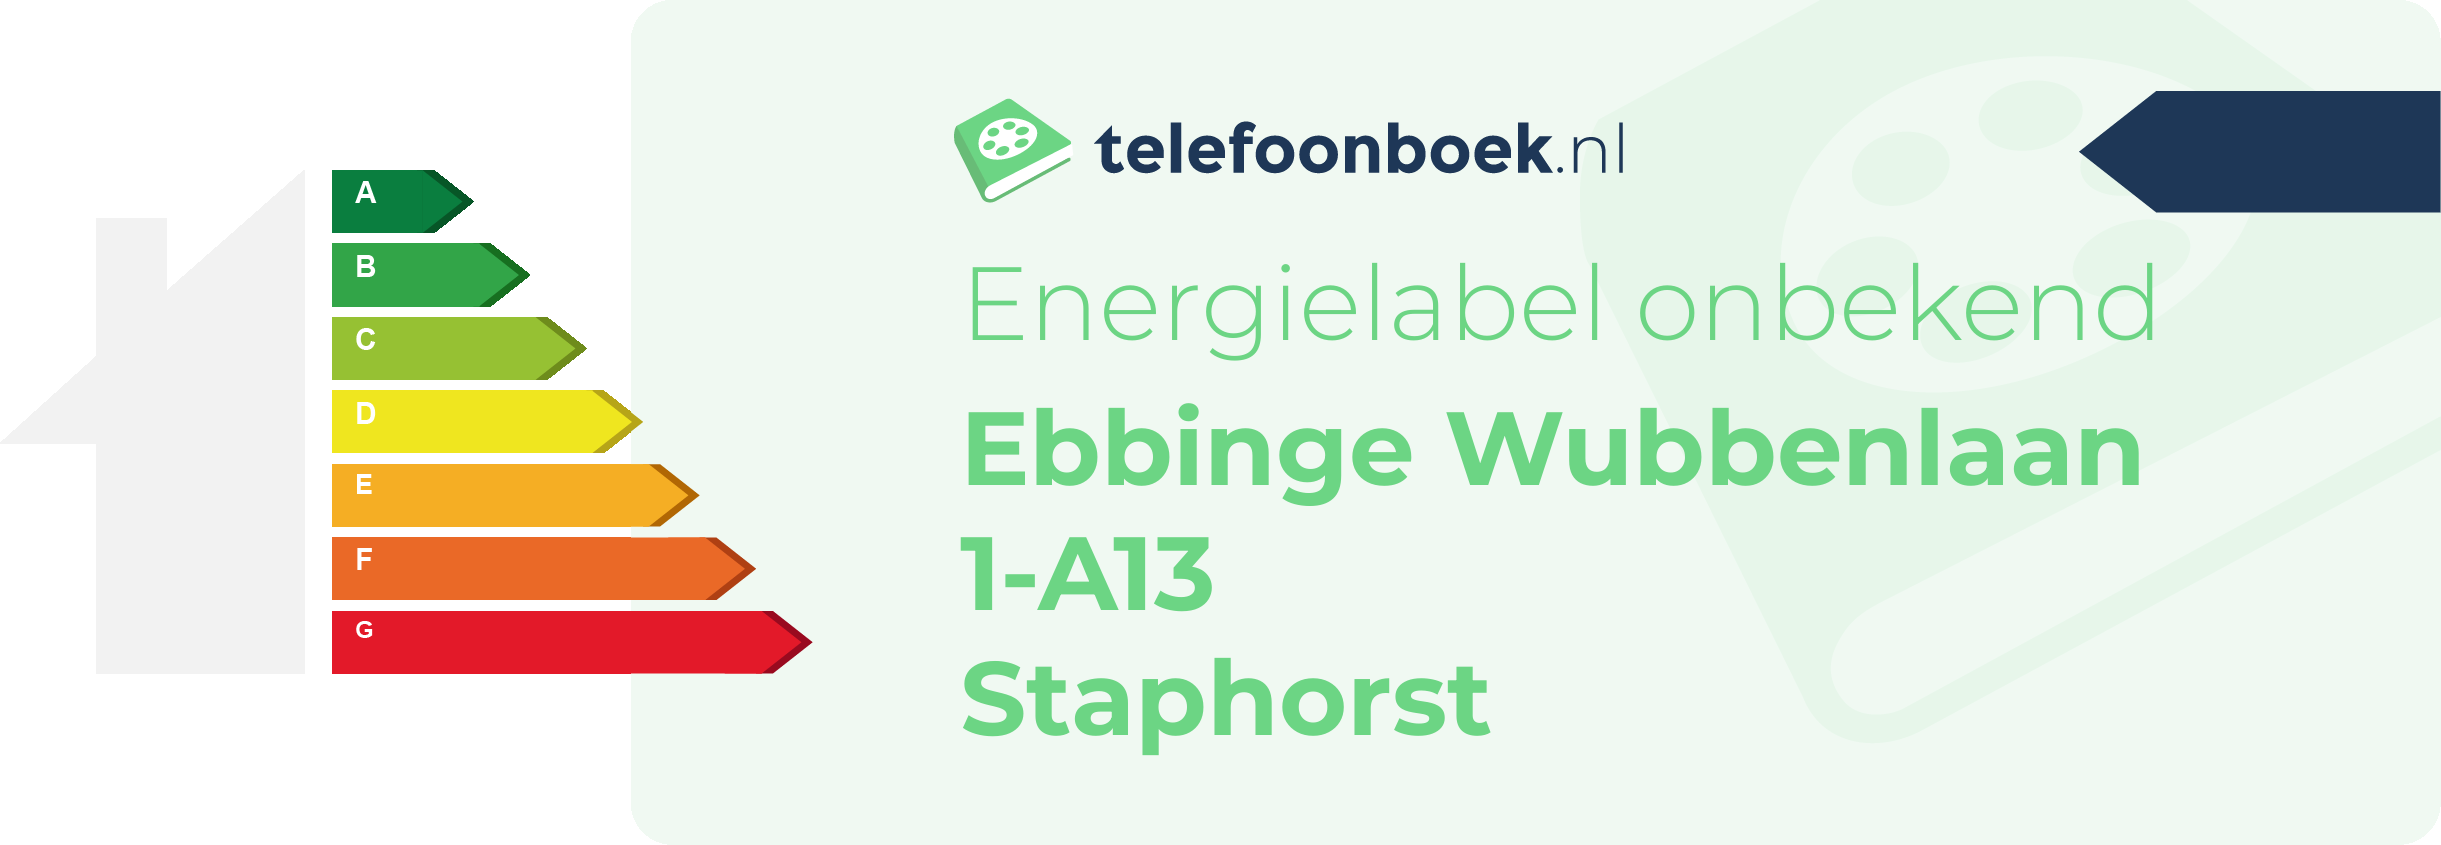 Energielabel Ebbinge Wubbenlaan 1-A13 Staphorst